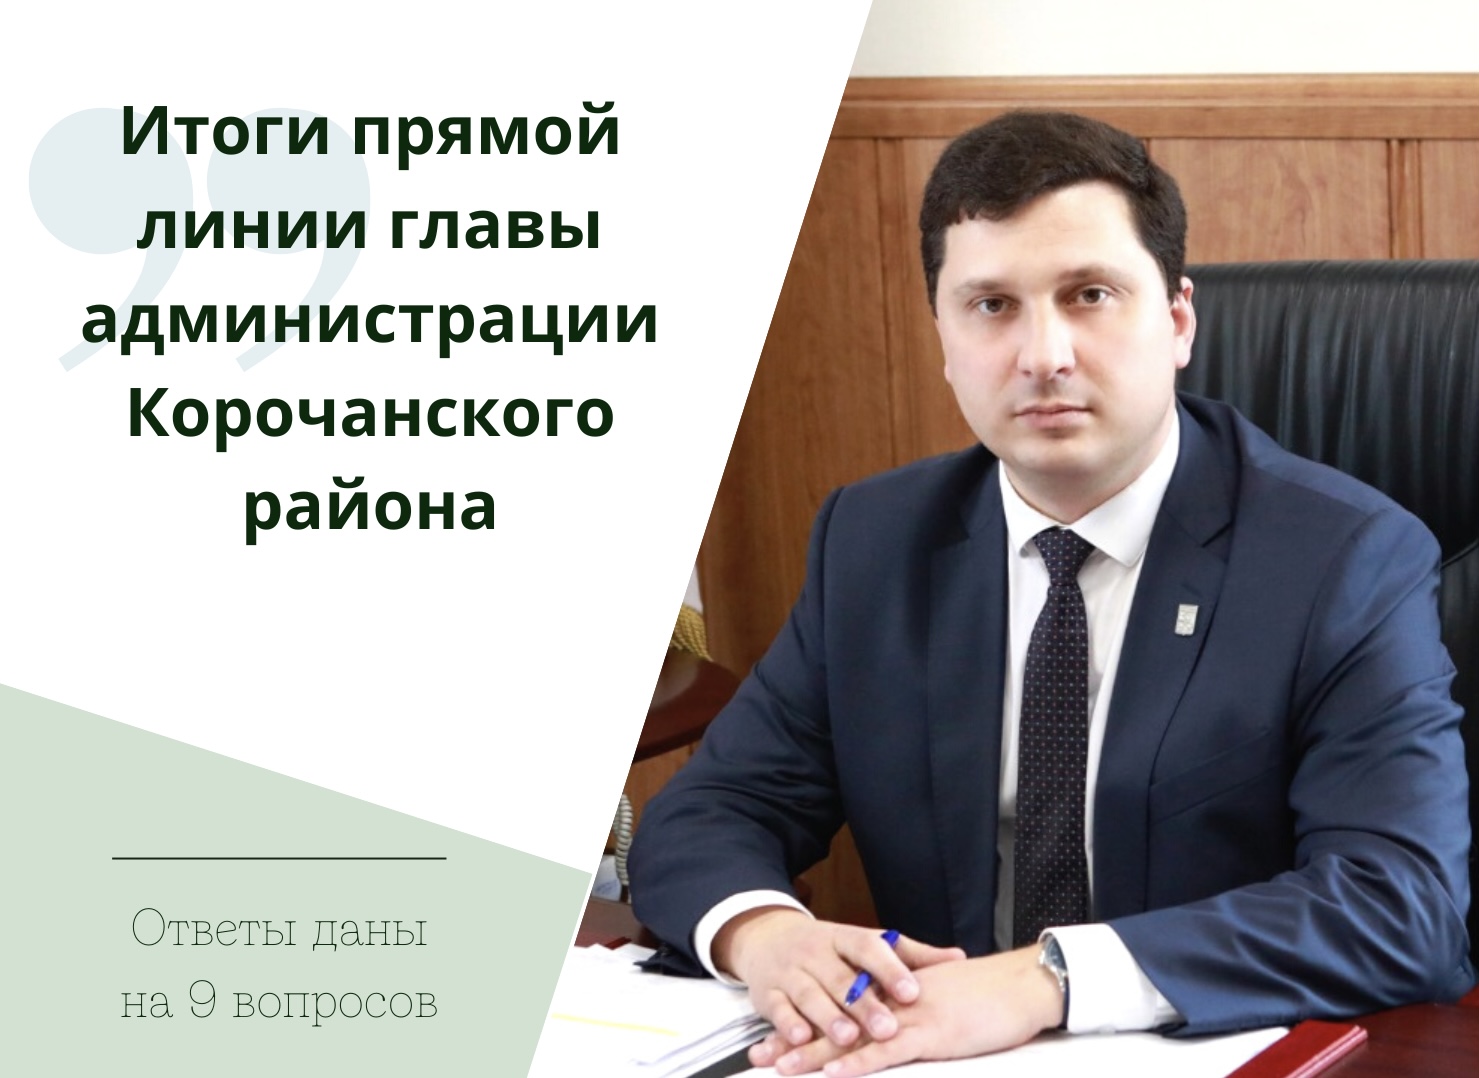 В ходе прямой линии глава администрации района Николай Васильевич Нестеров ответил на 9 вопросов